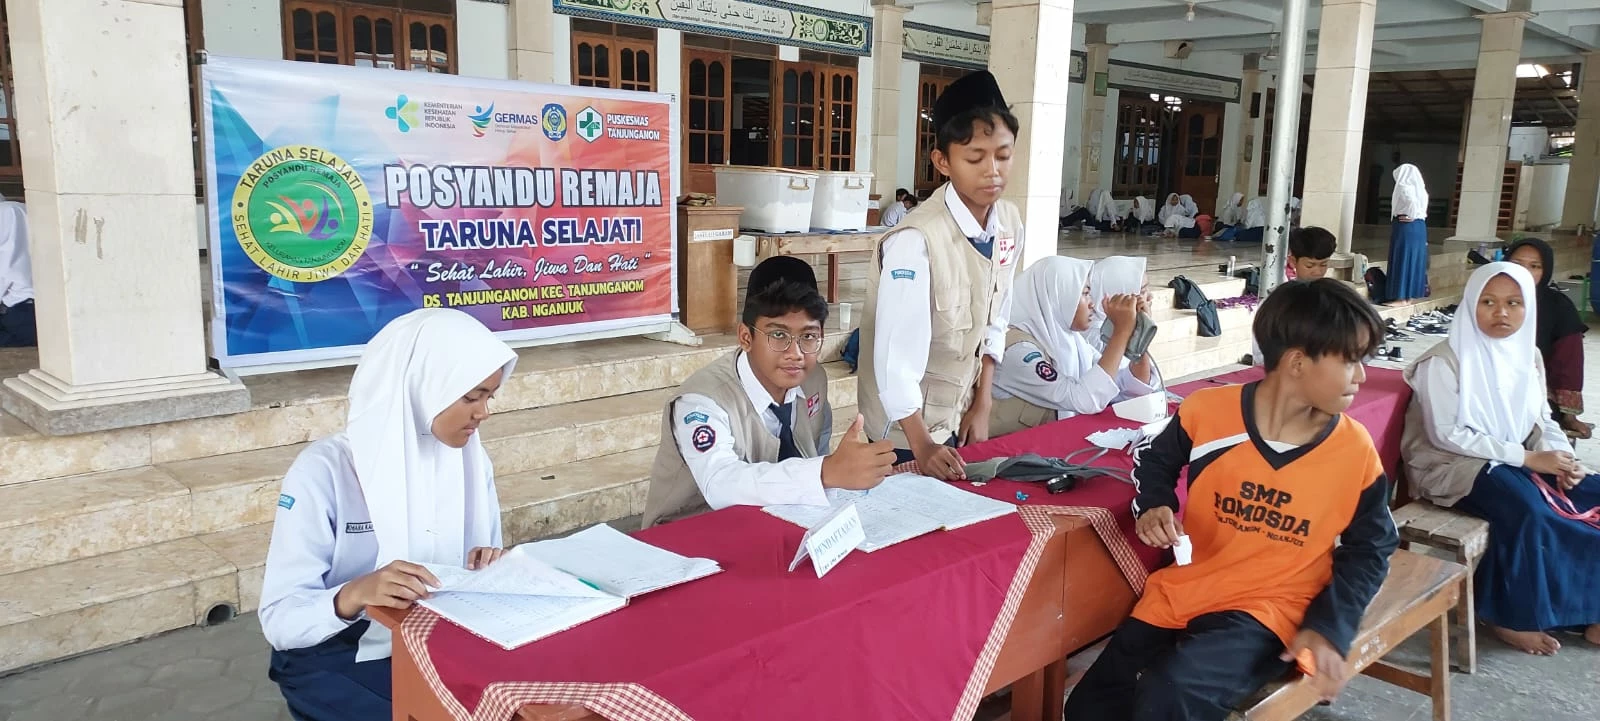 Penjaringan Kesehatan Santri SMP Pomosda Tanjunganom Sukses Digelar, Santri Antusias dan Wawasannya Bertambah